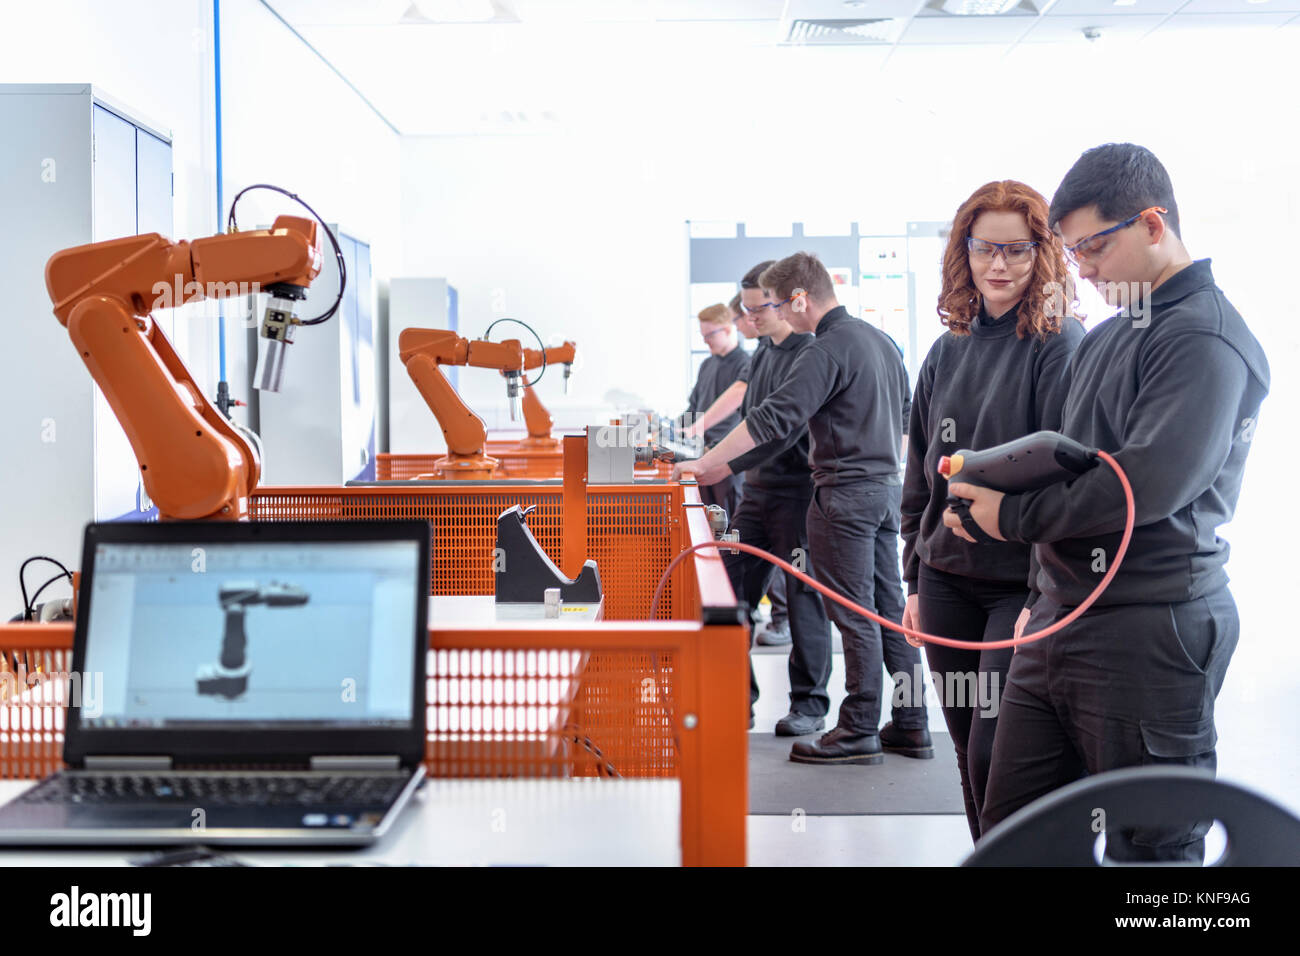 Los aprendices de robótica utilizando el test robots industriales en instalaciones de robótica Foto de stock